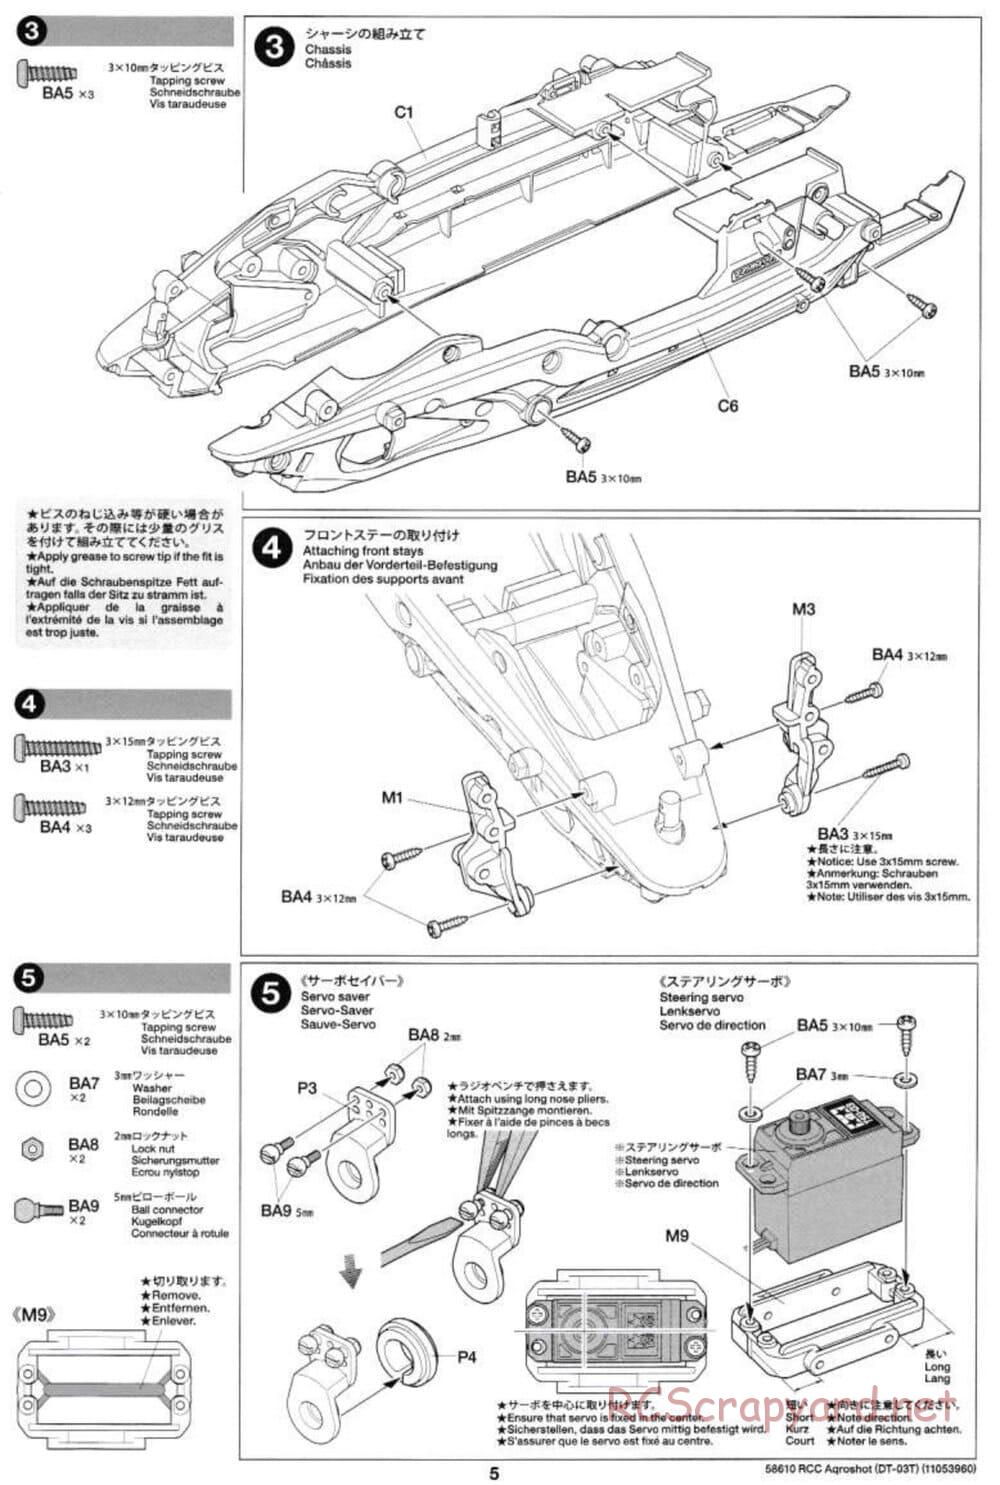 Tamiya - Aqroshot Chassis - Manual - Page 5